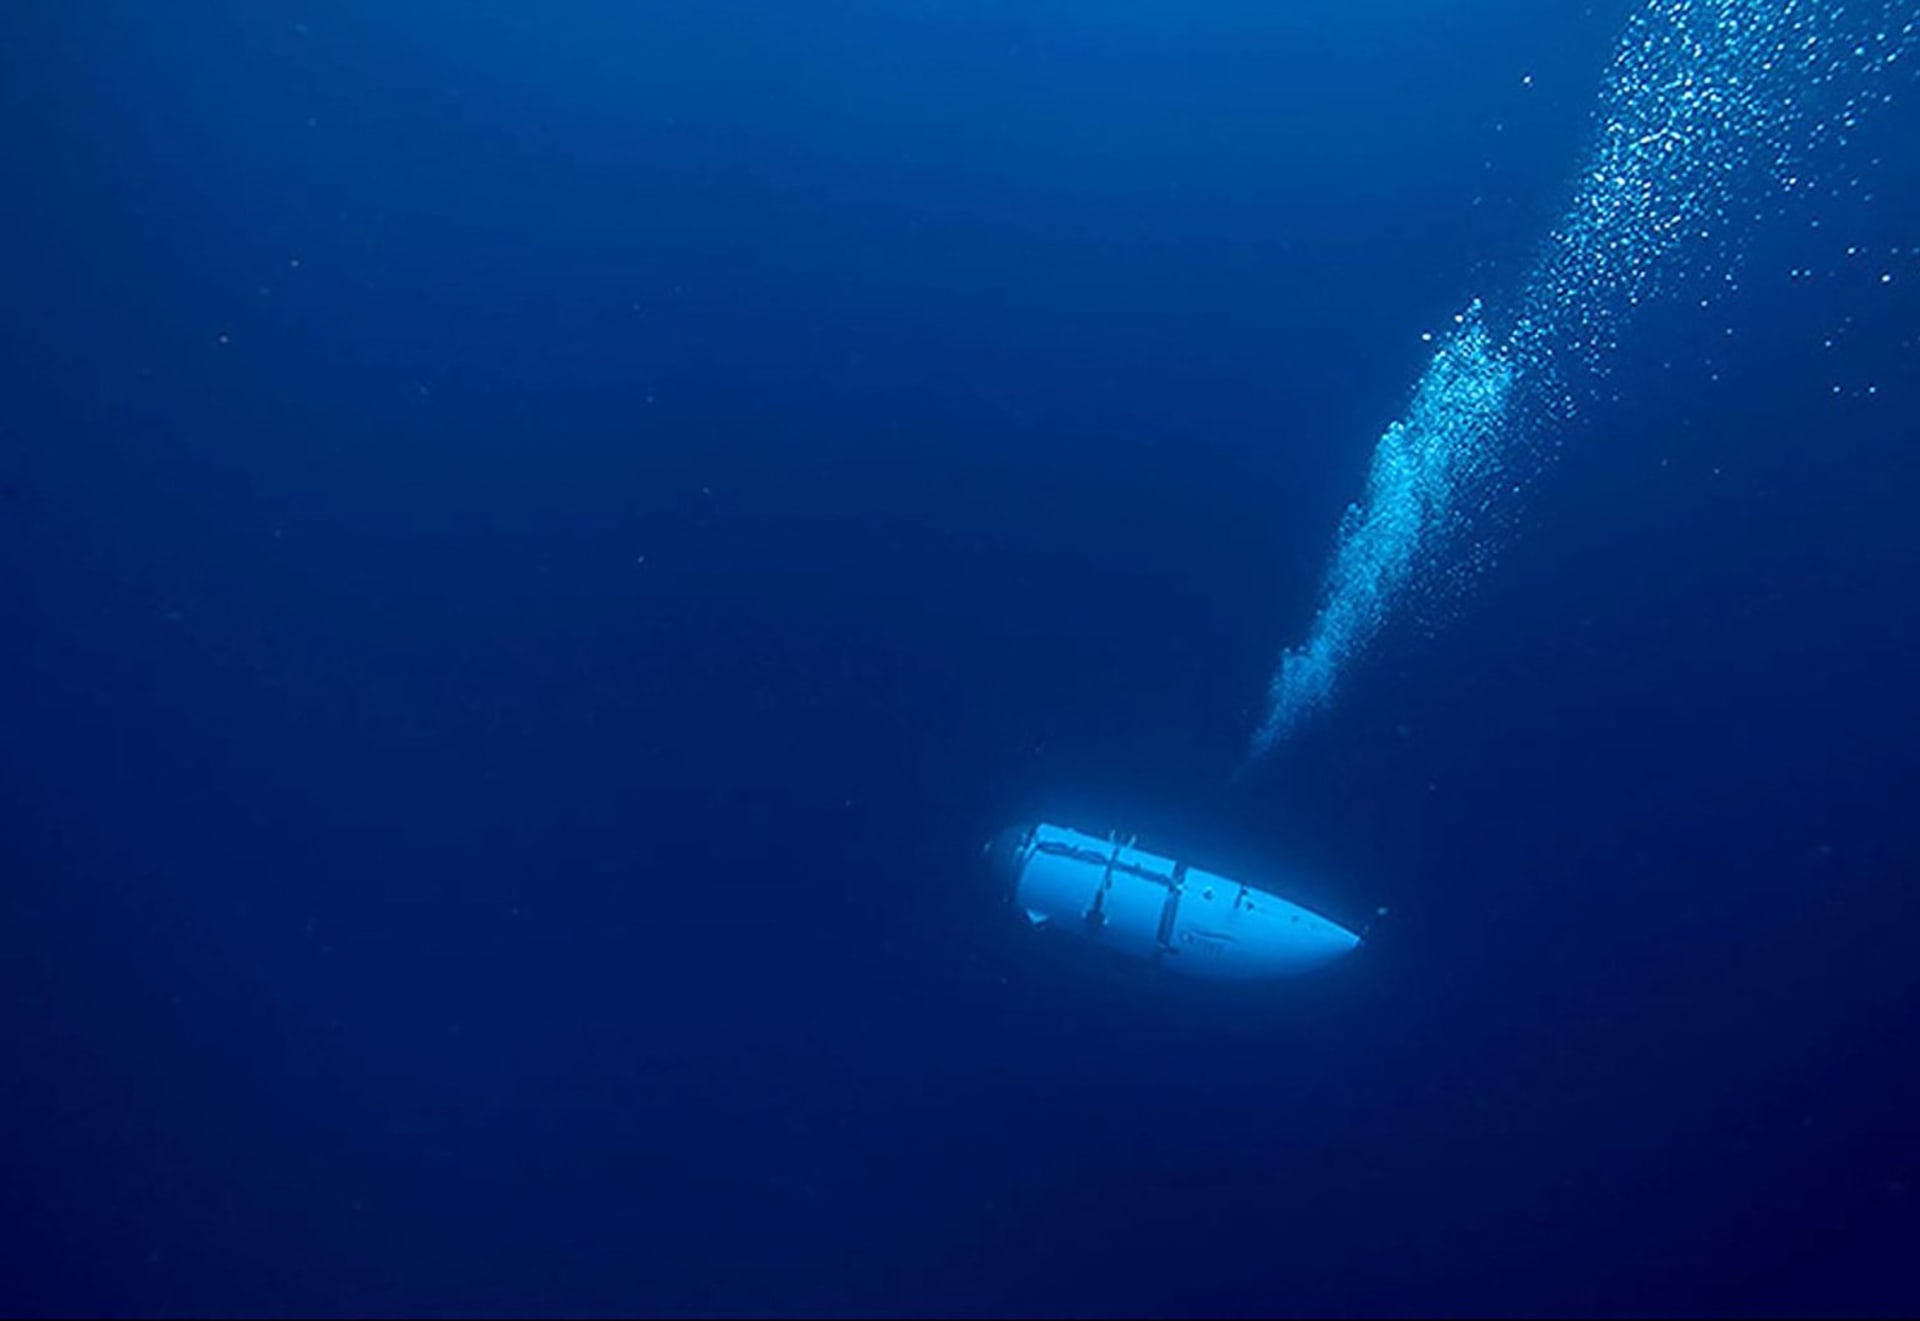 Nezvěstná ponorka Titan společnosti OceanGate Expeditions během klesání k mořskému dnu